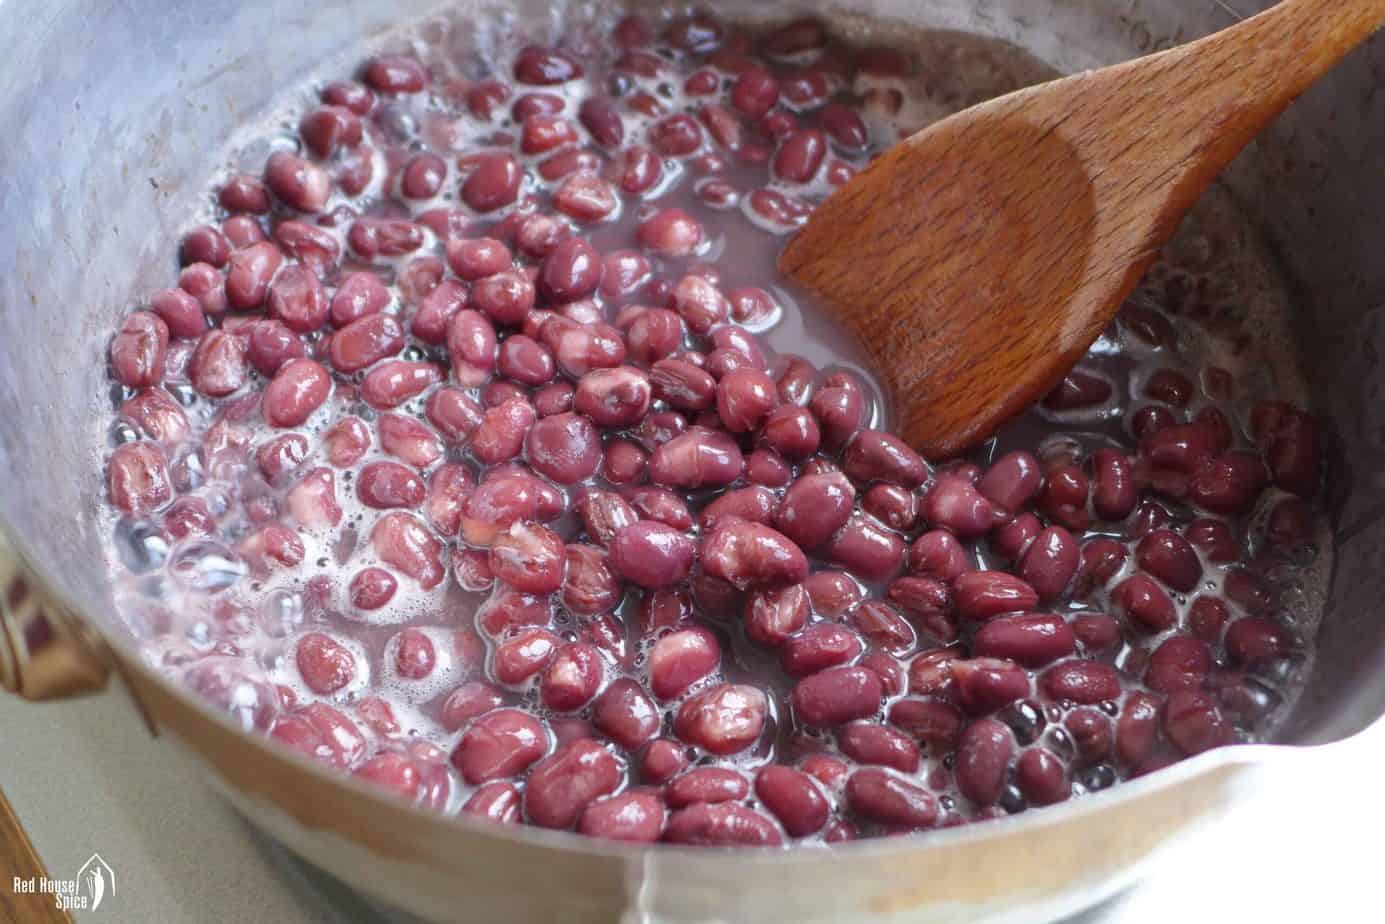 Cooking adzuki beans in water